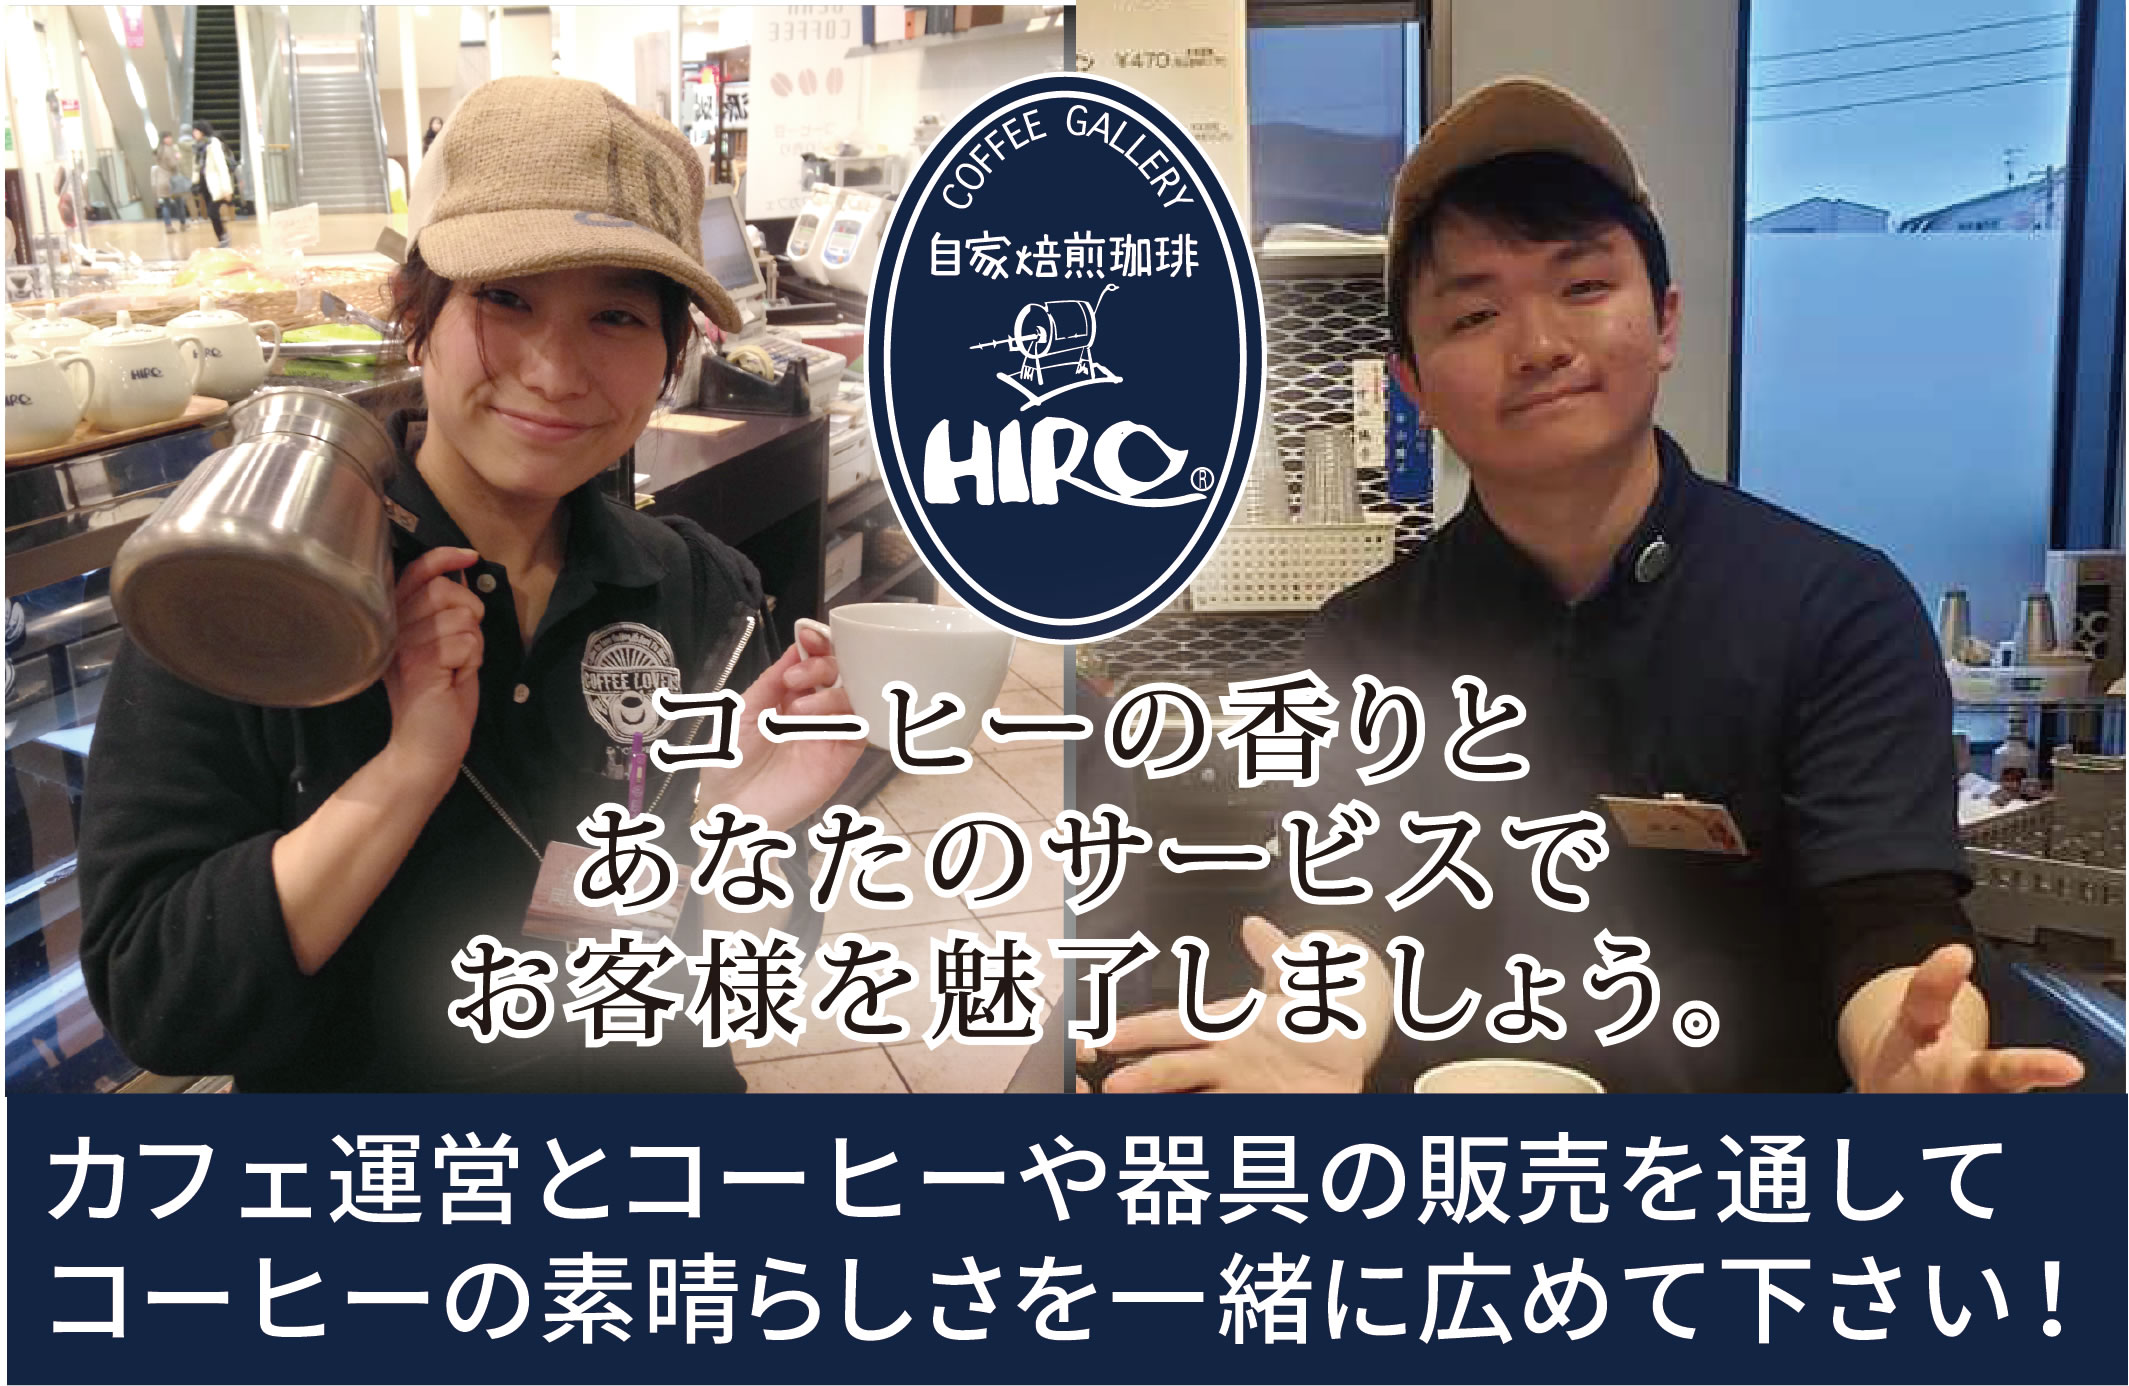 株式会社ヒロコーヒー Hirocoffee Co Ltd